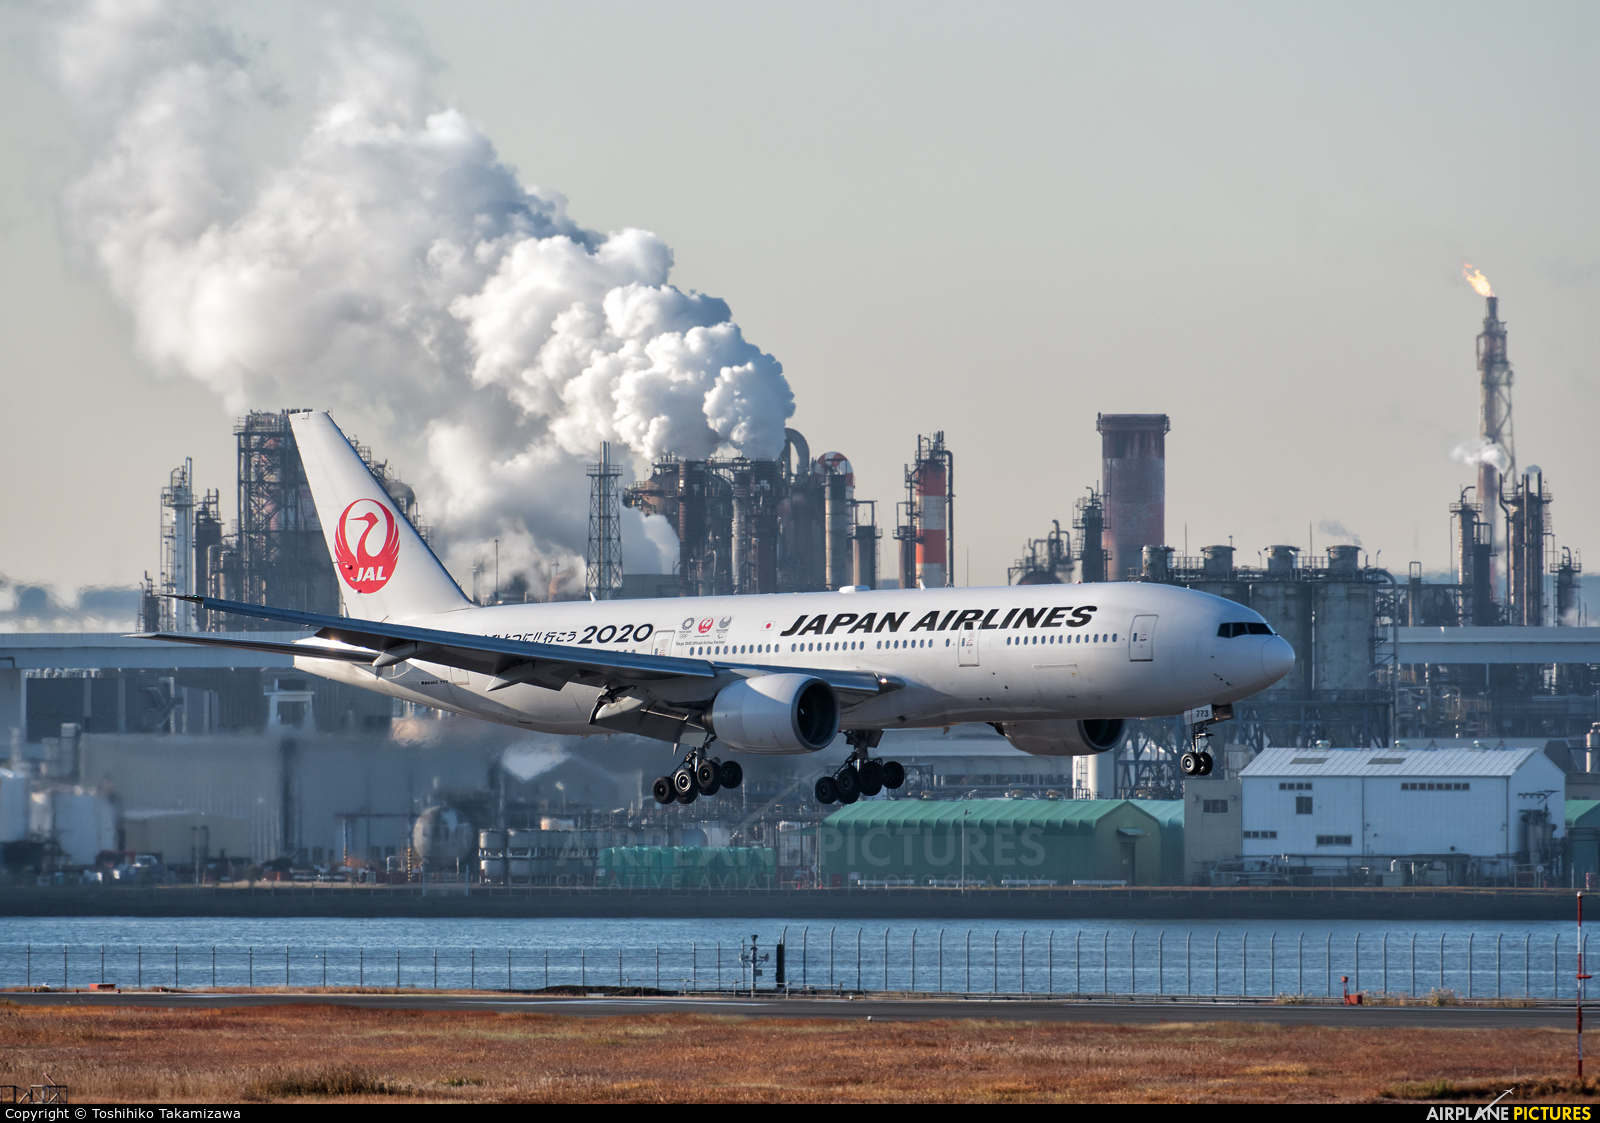 JAL - Japan Airlines JA773J aircraft at Tokyo - Haneda Intl